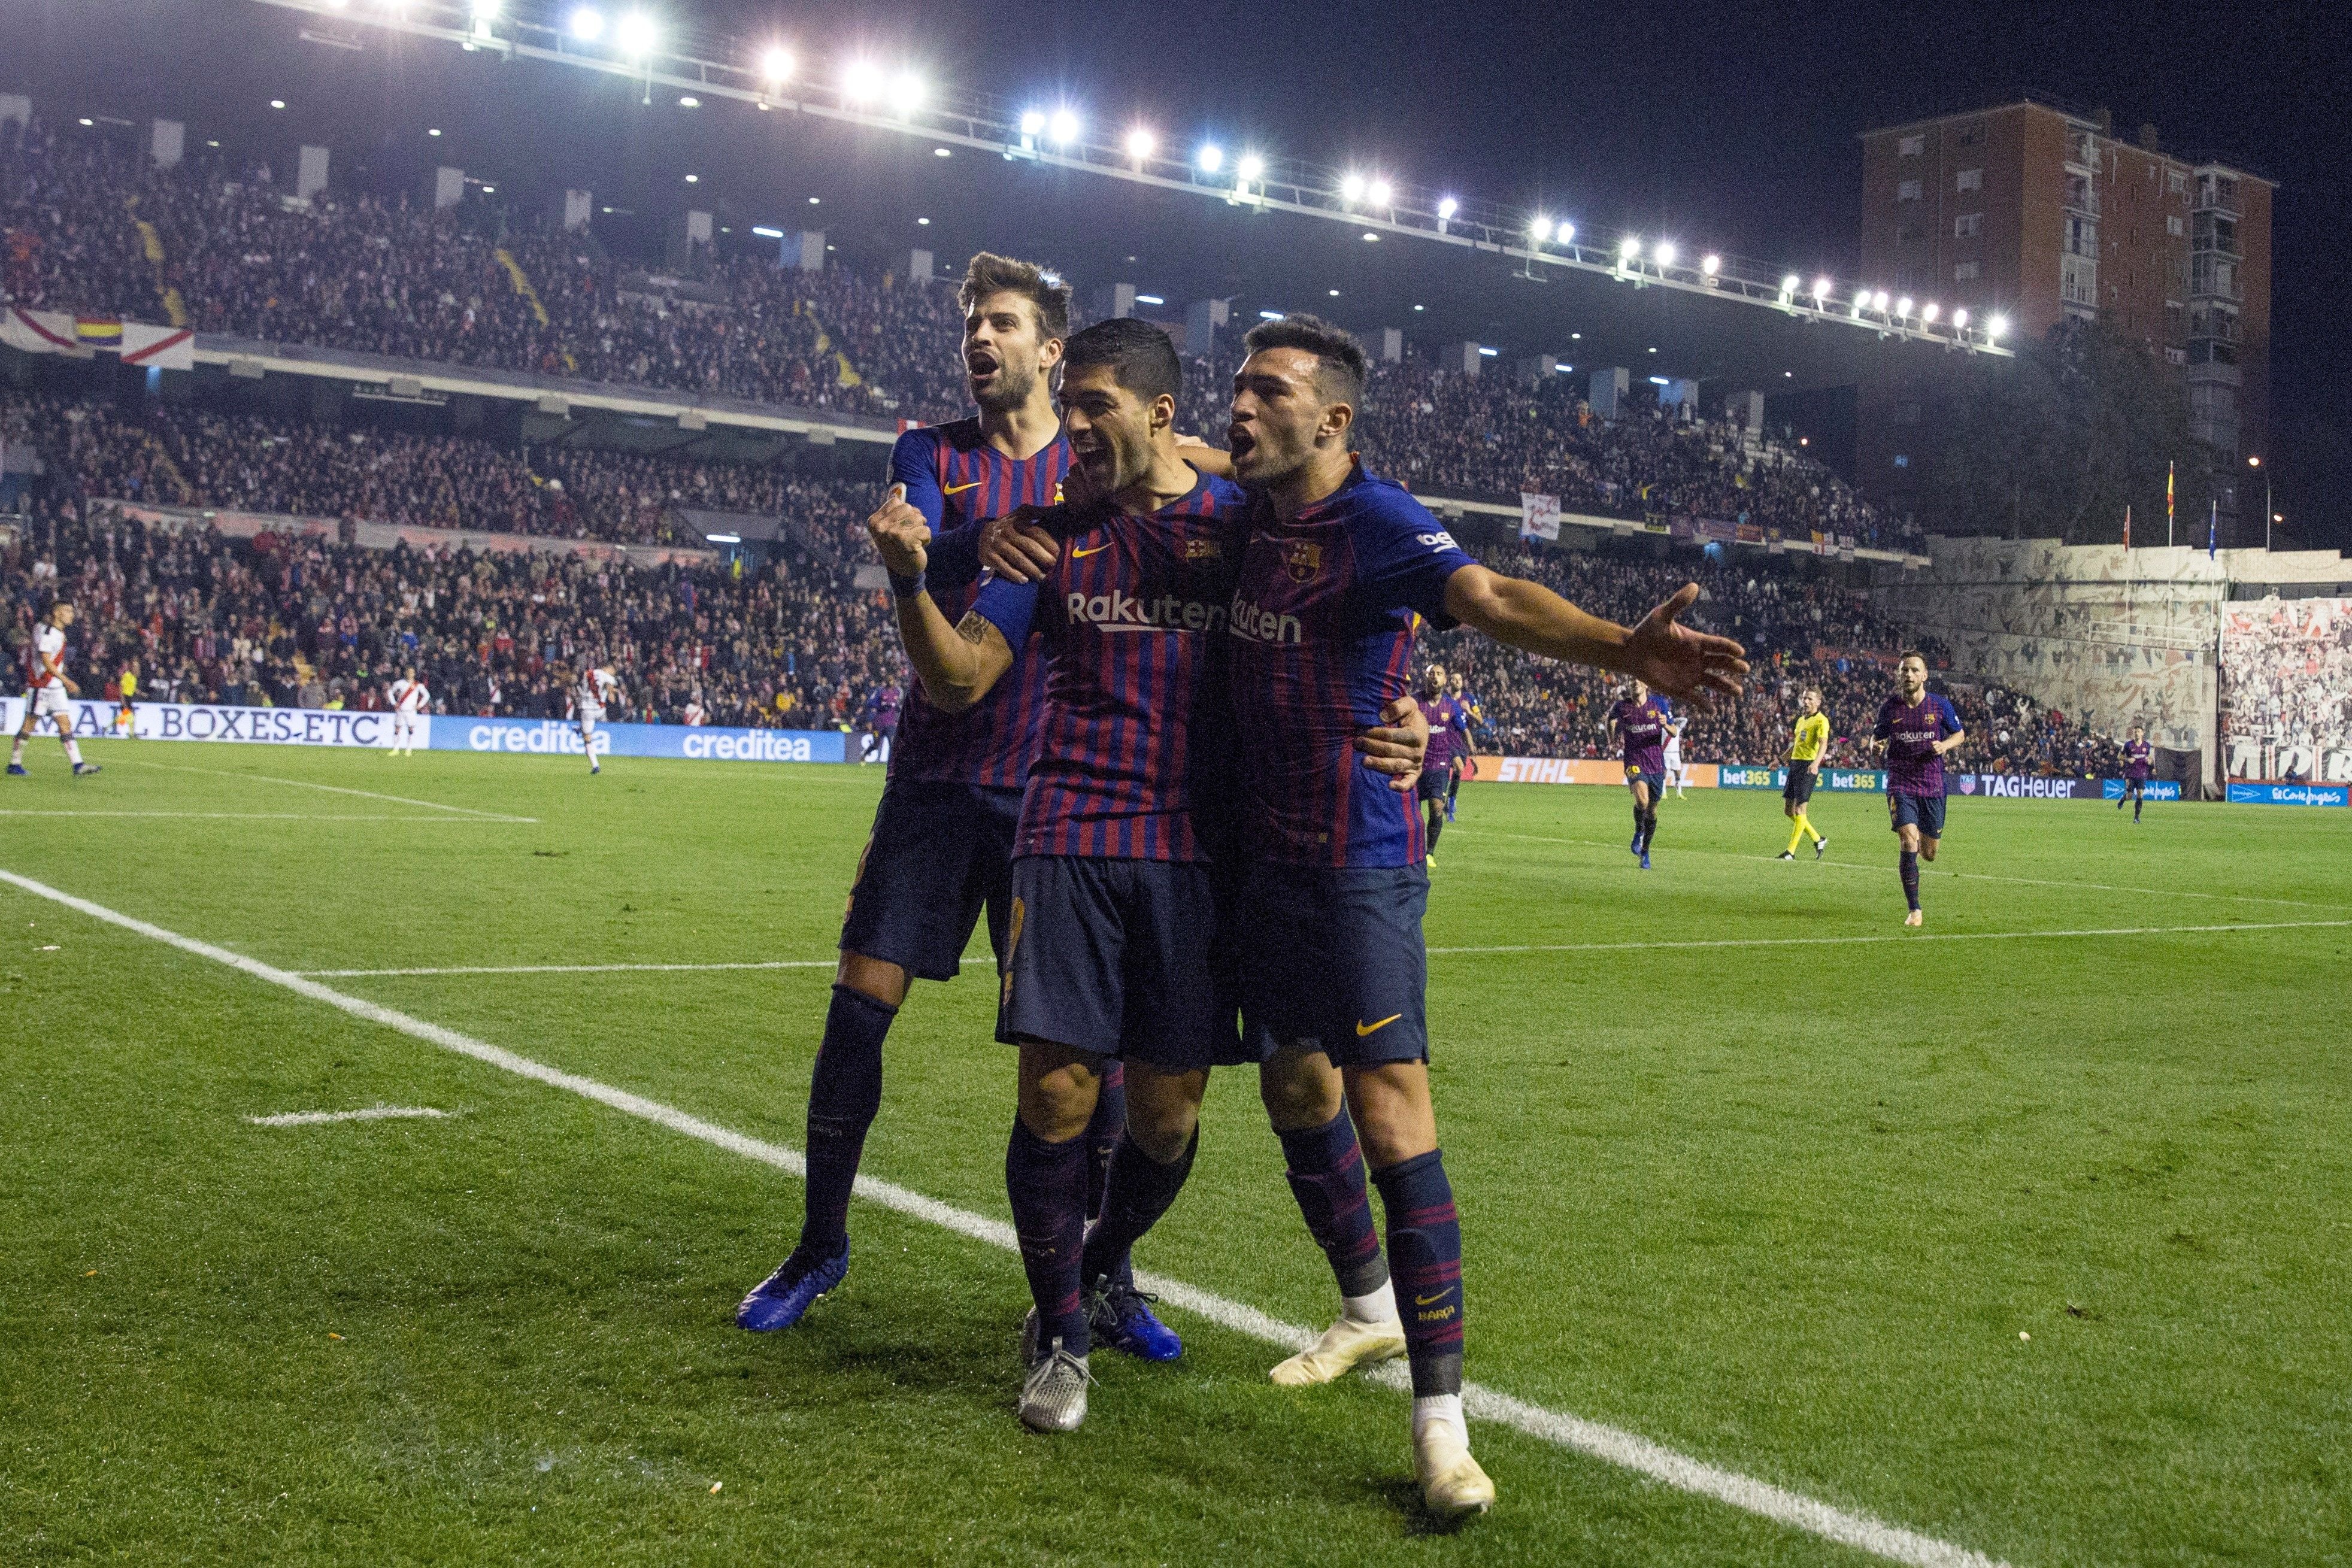 El Barça remunta després de la desconnexió a Vallecas (2-3)